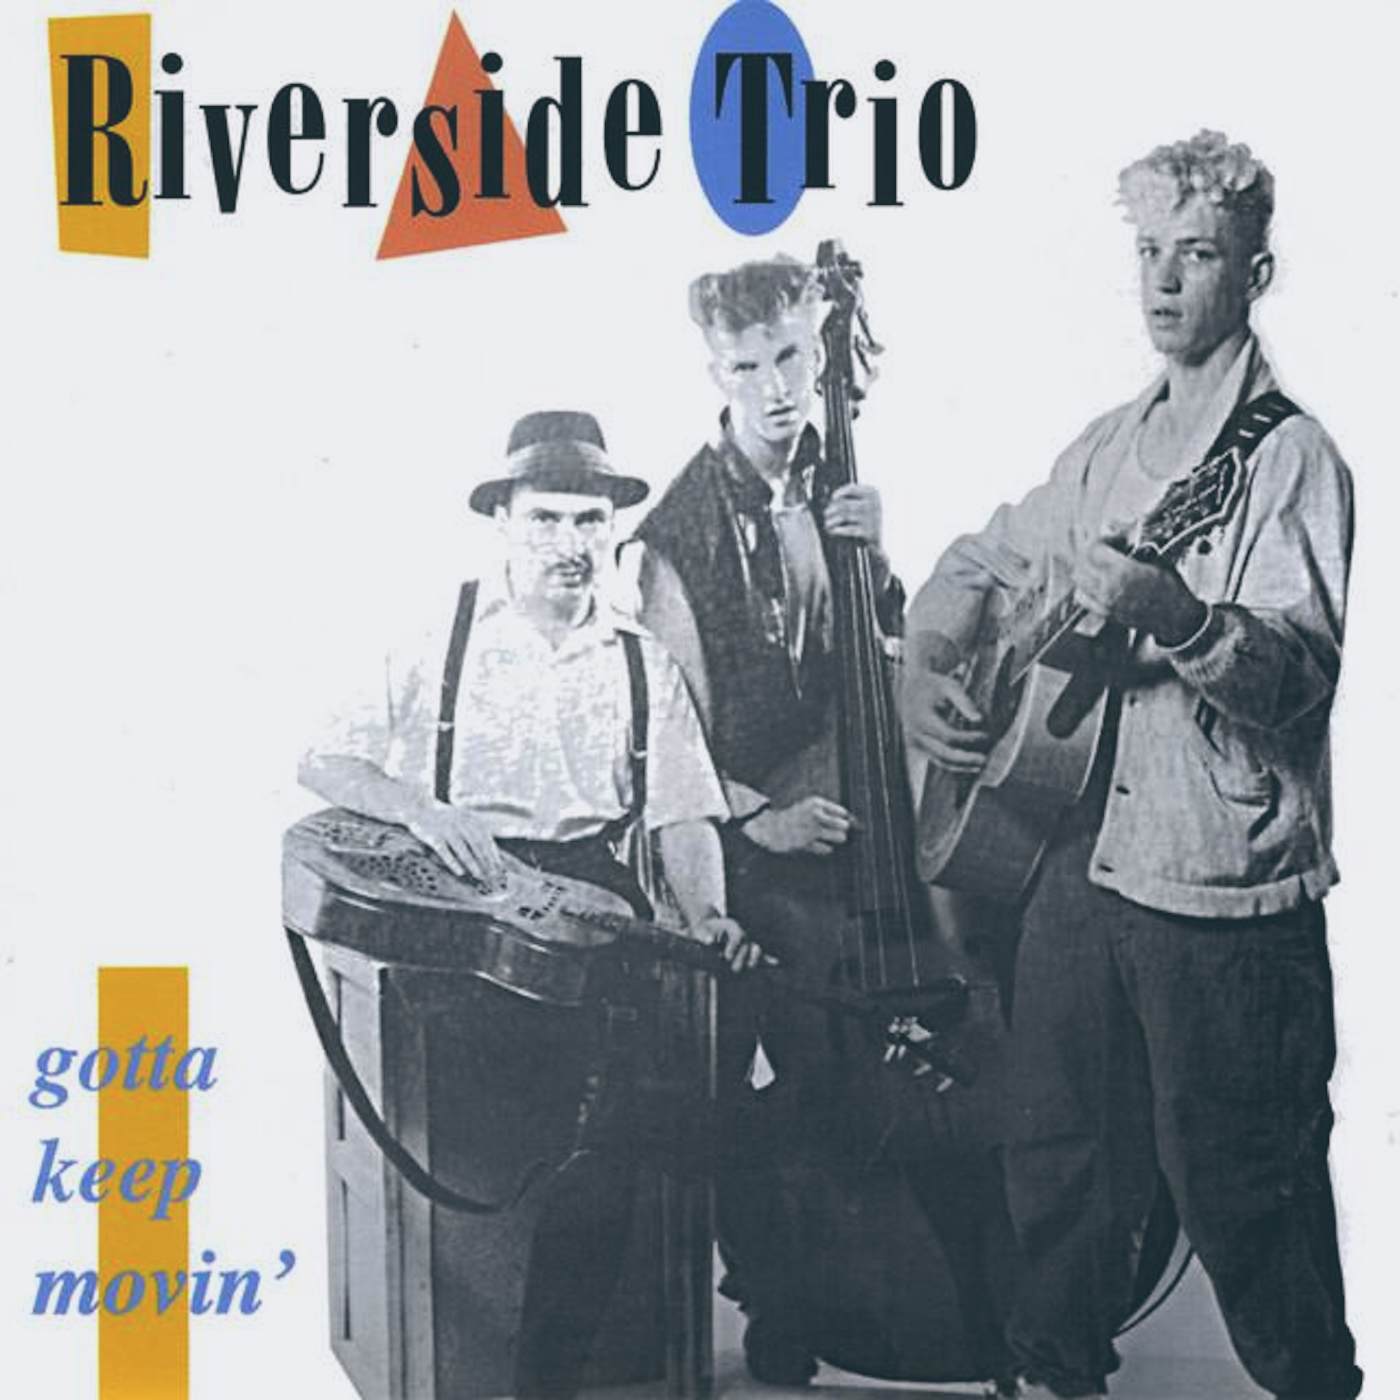 The Riverside Trio